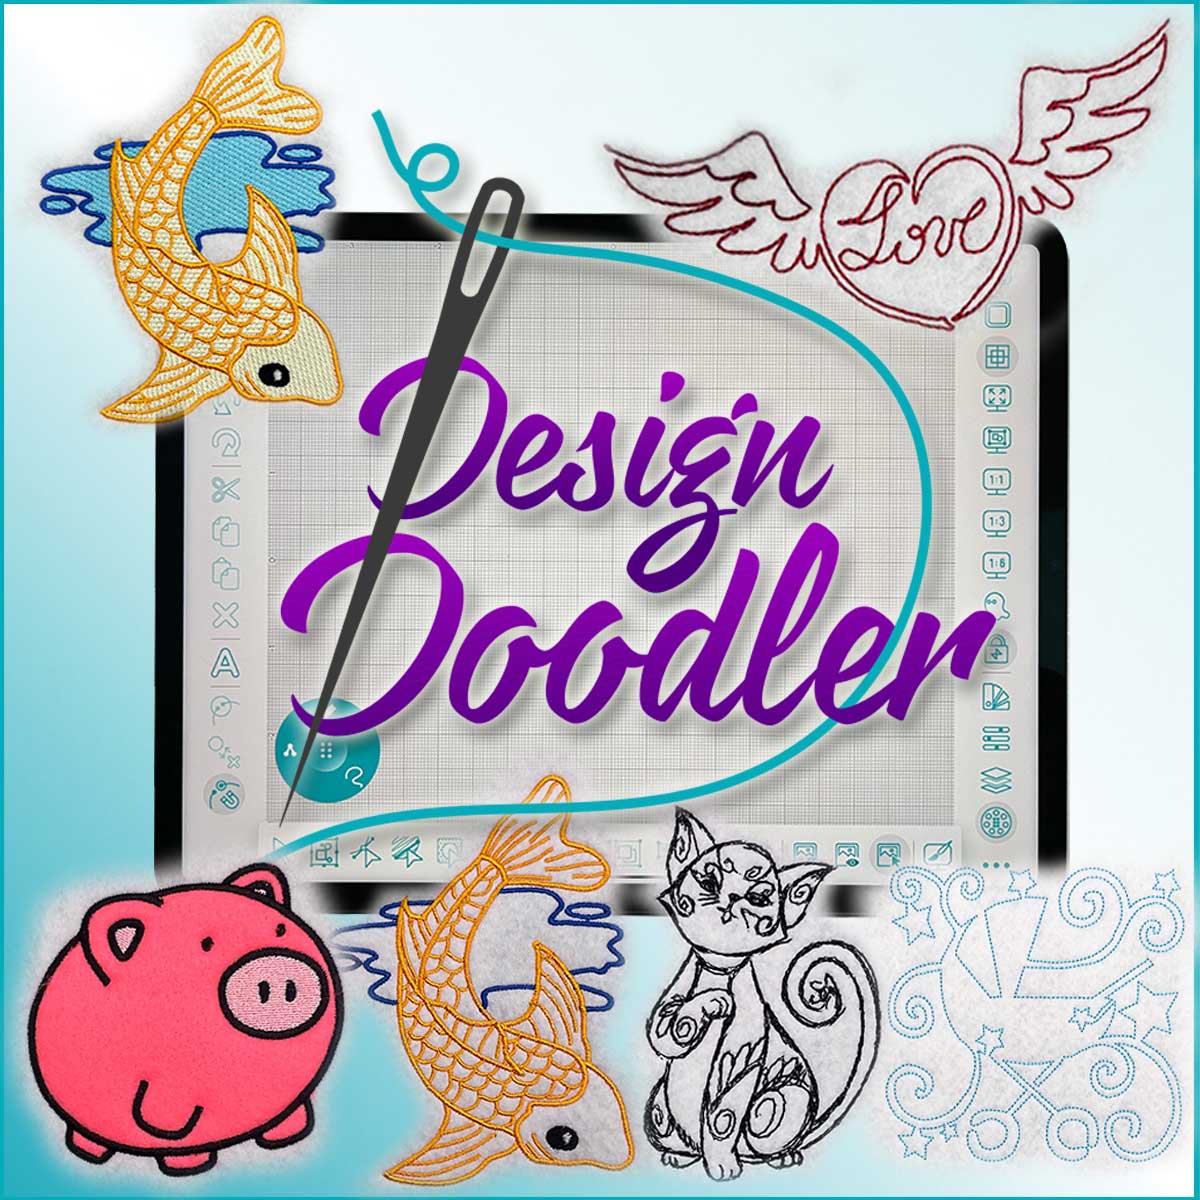 Design Doodler Free Trial